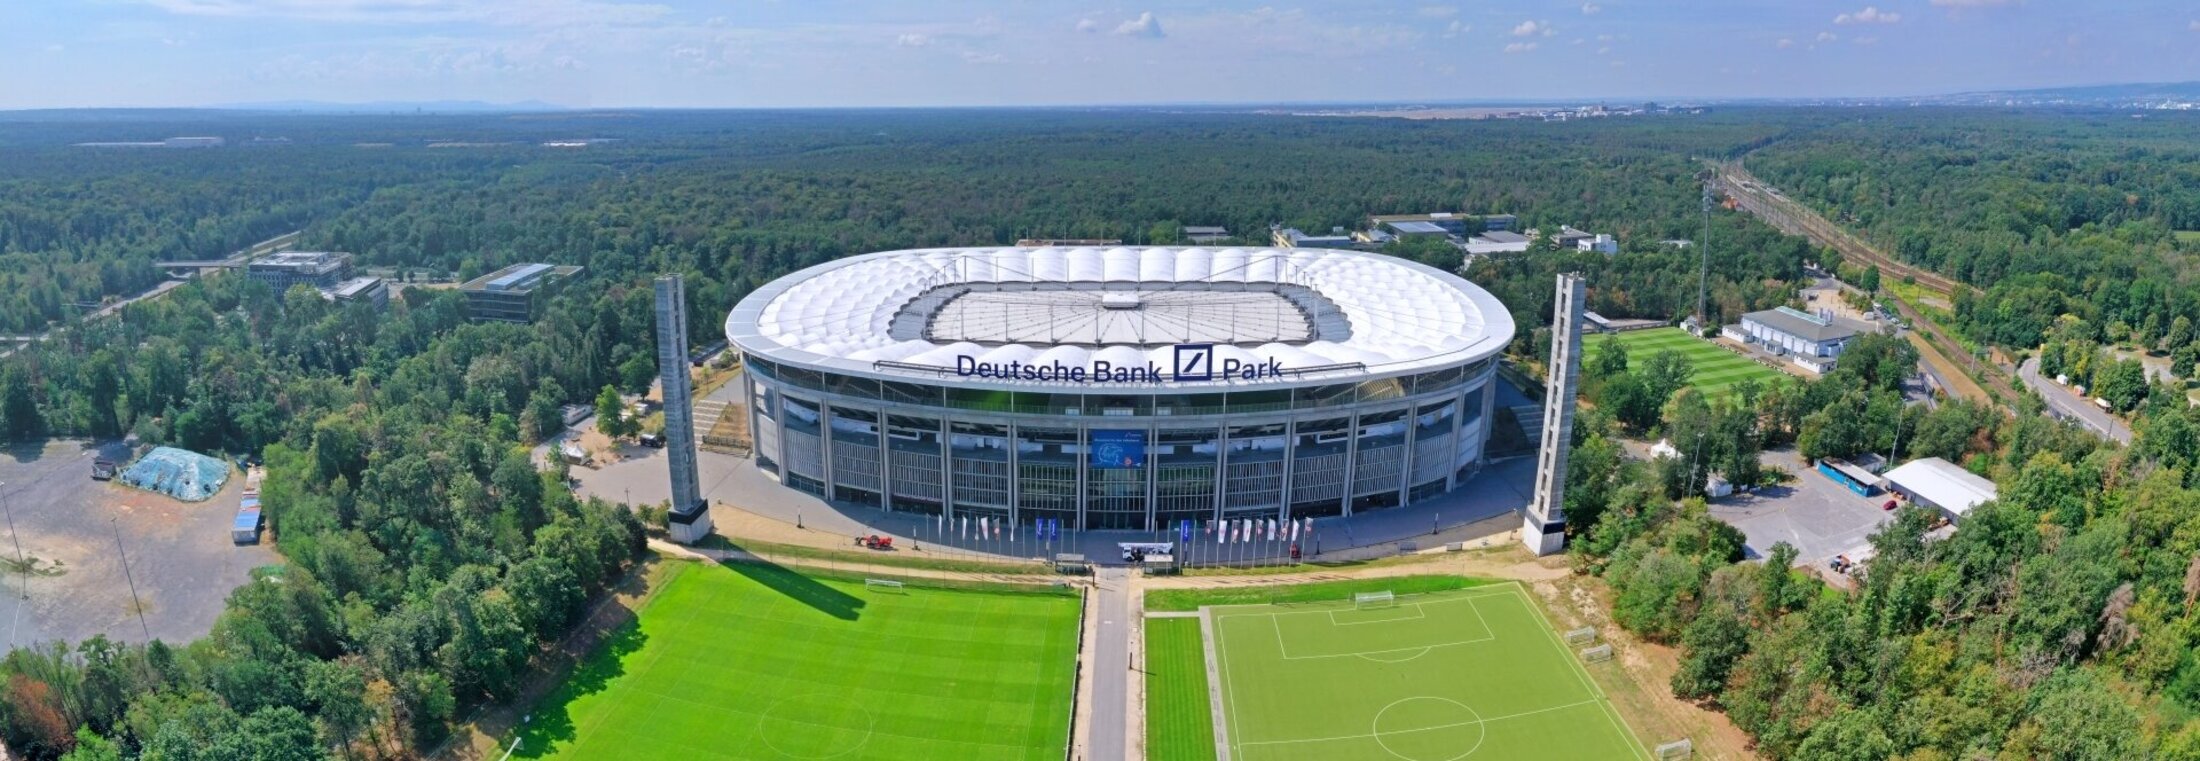 frauenlauf-frankfurt.de: Deutsche Bank Park